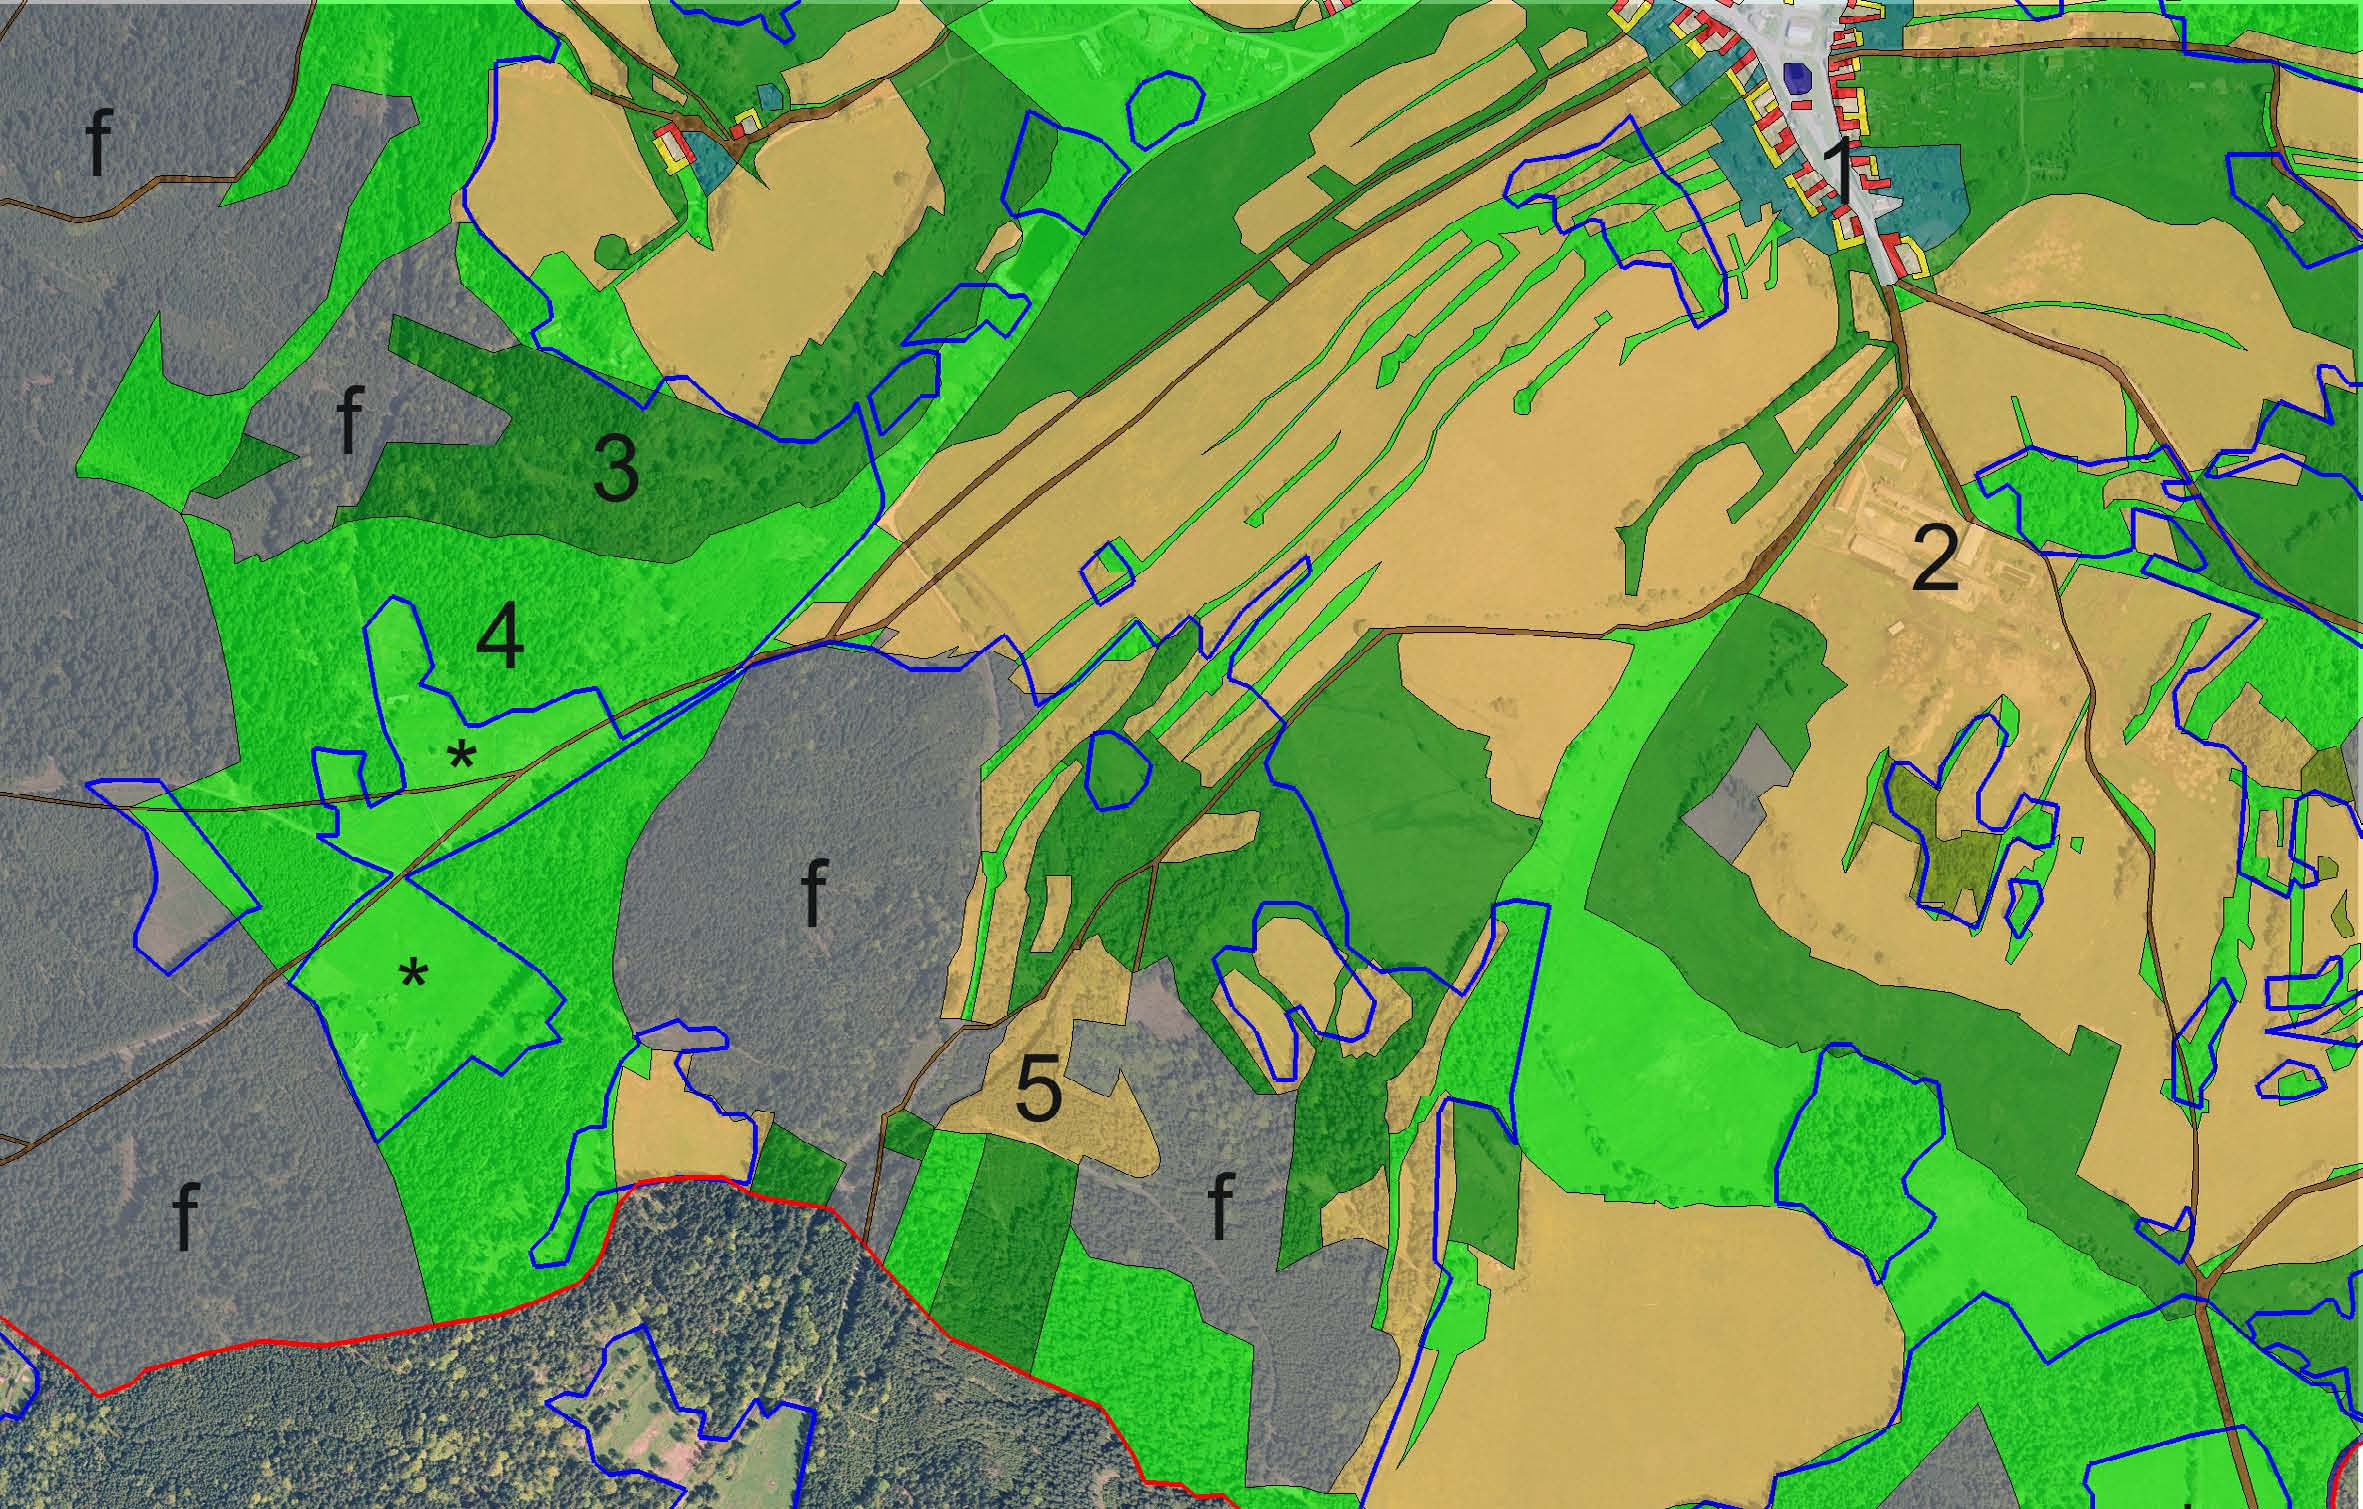 Obr. 8. Část obce Chroboly (hranice obce červeně) na mapovém listu SMO-5 Volary 4-2. Stav v roce 2005 je znázorněn podkladovým leteckým snímkem.